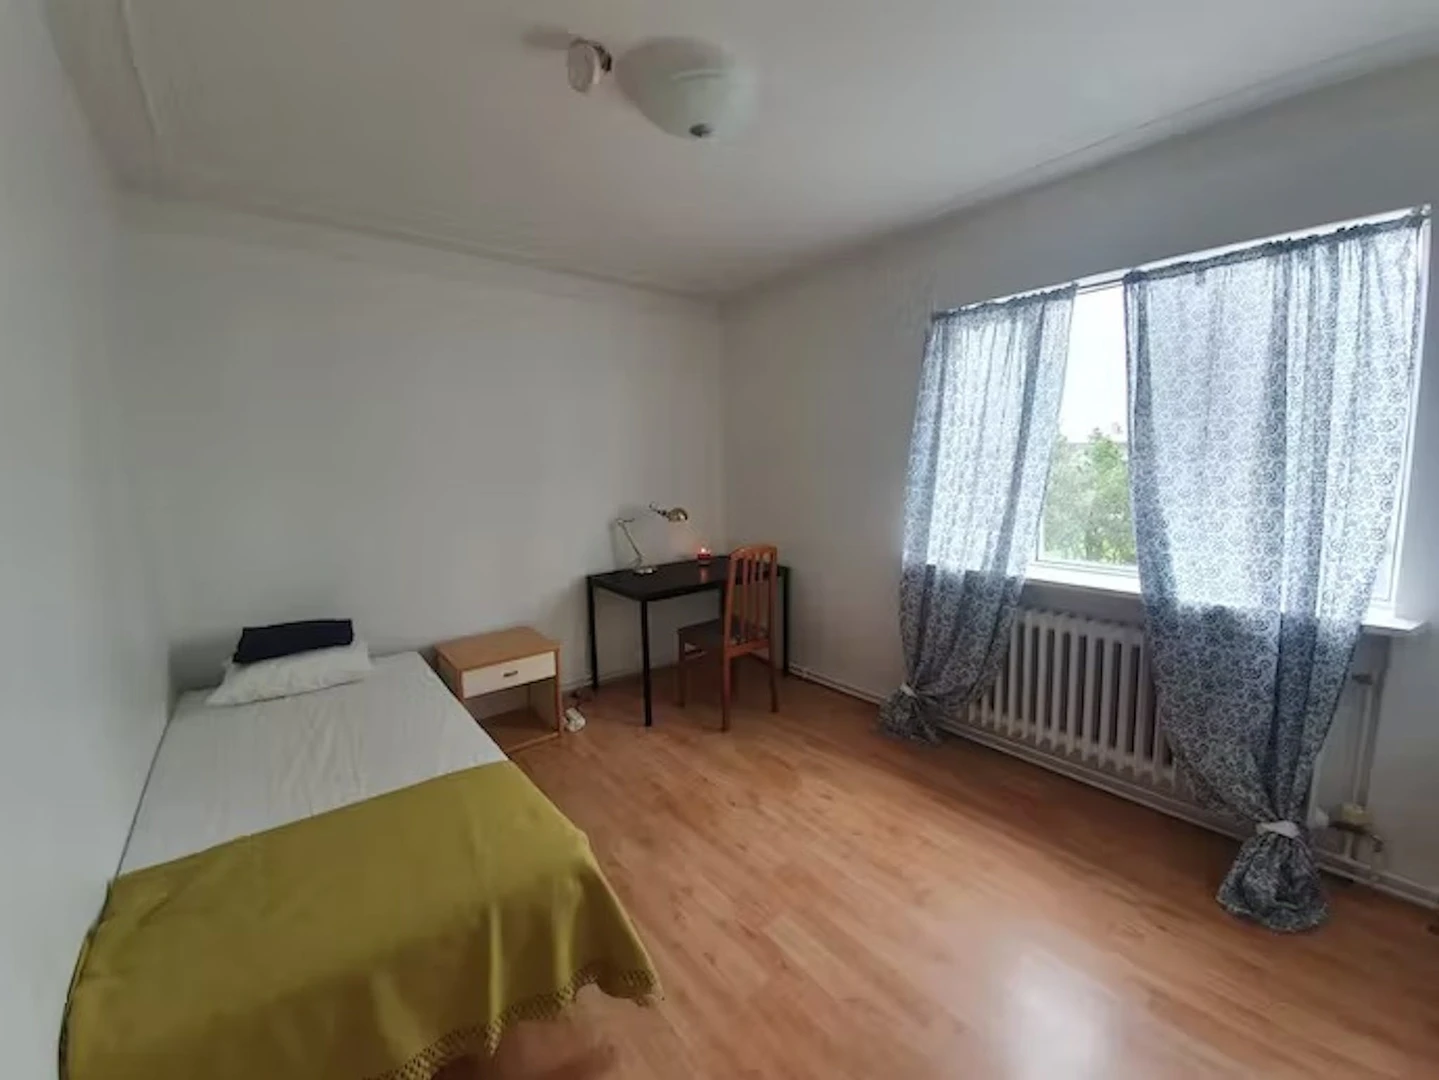 Reykjavík de çift kişilik yataklı kiralık oda